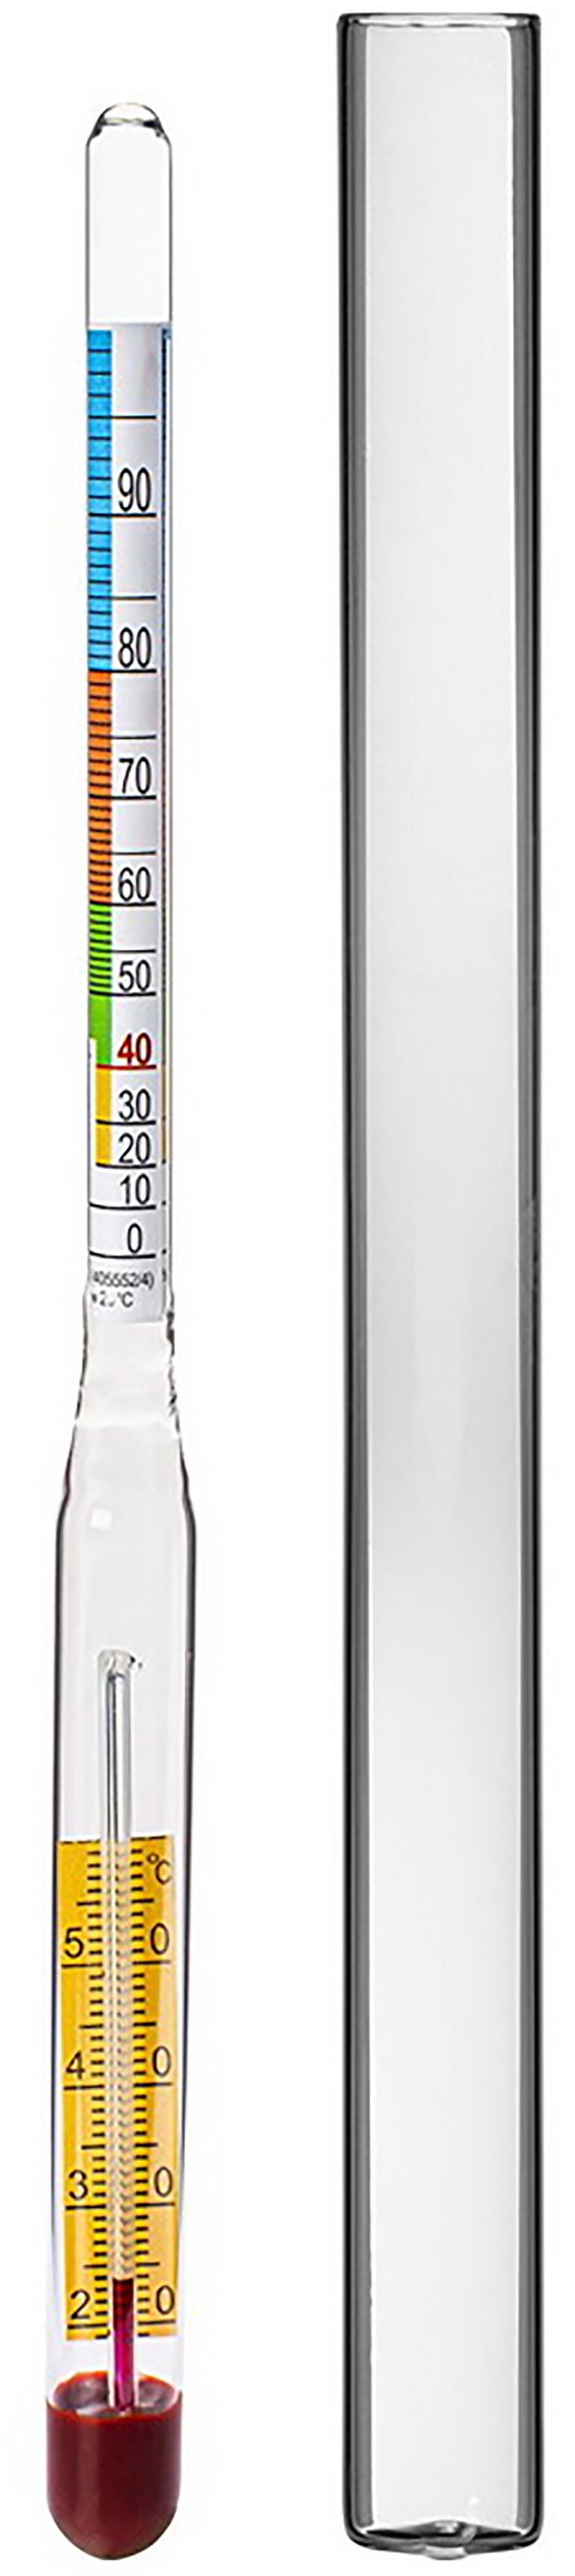 alkoholmetr s teploměrem 0-95% 0.04 Kg MAXMIX Sklad14 330391 53